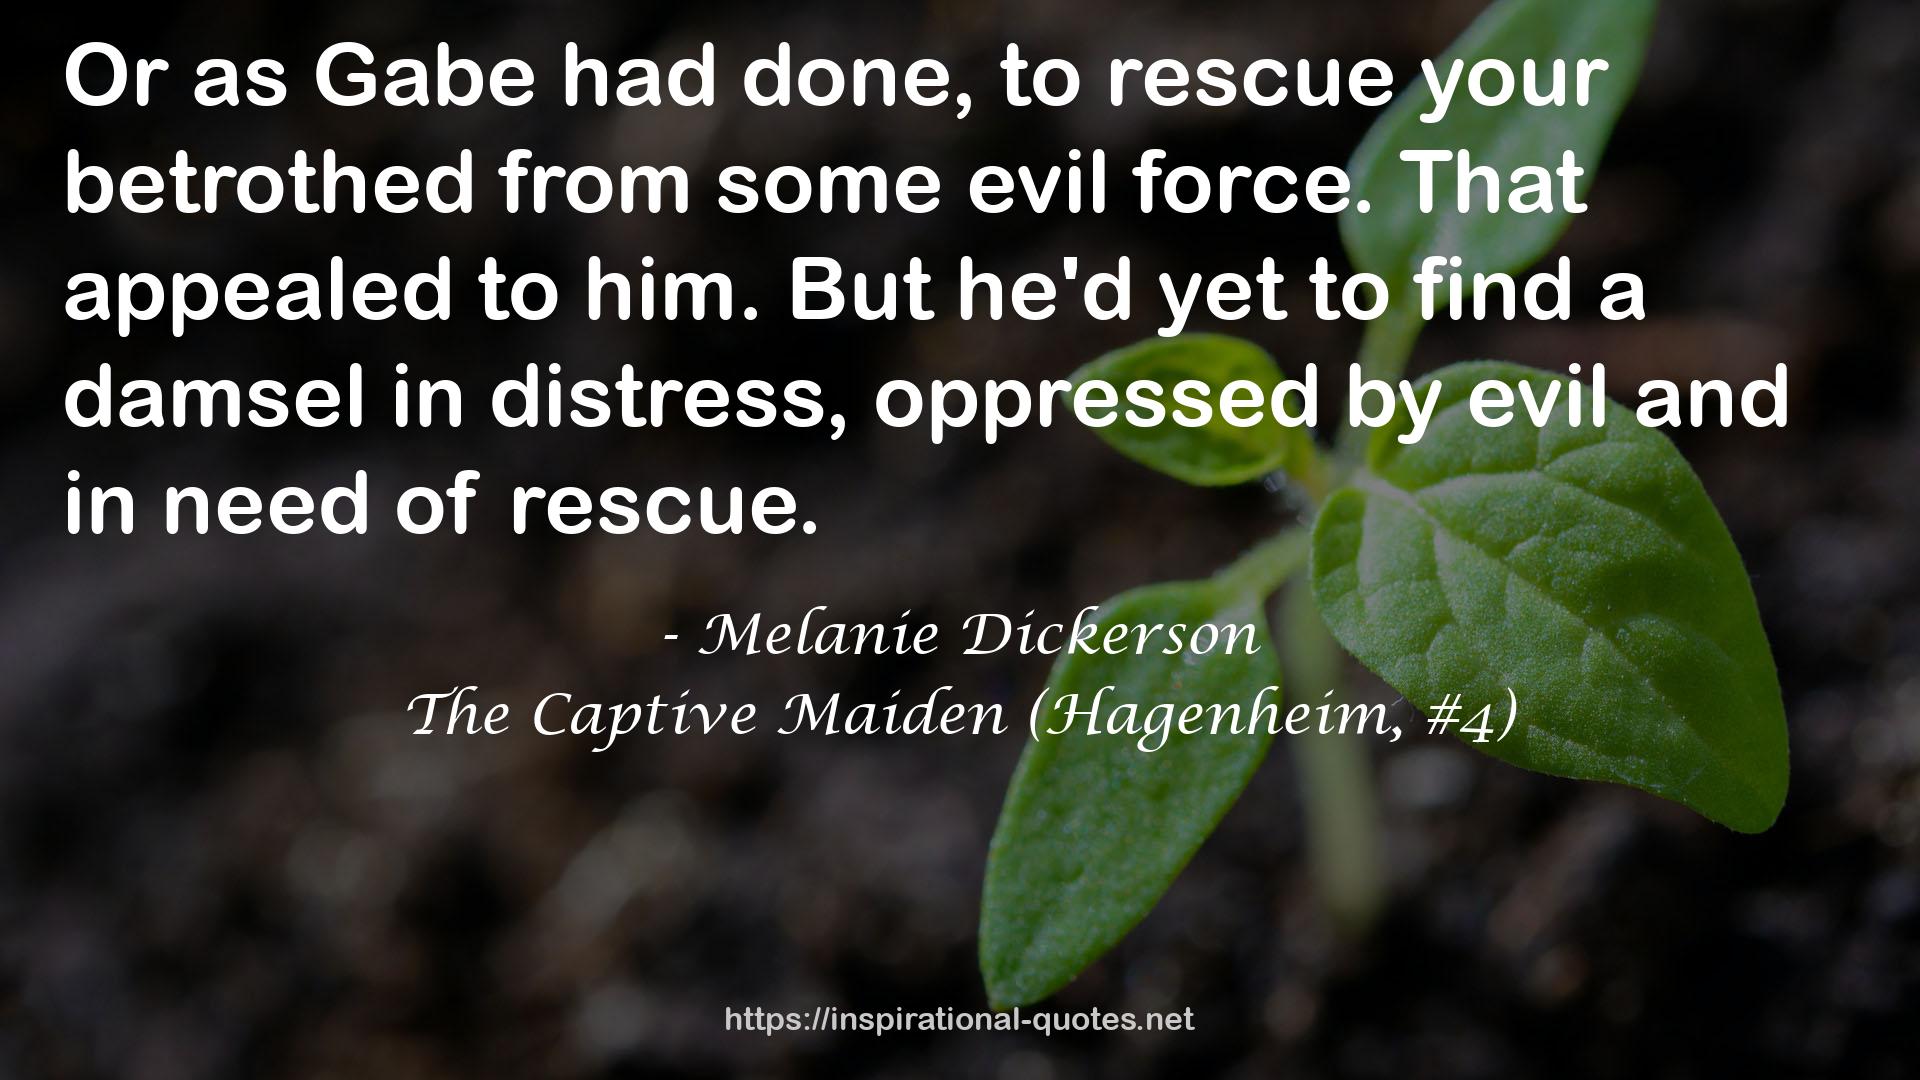 The Captive Maiden (Hagenheim, #4) QUOTES